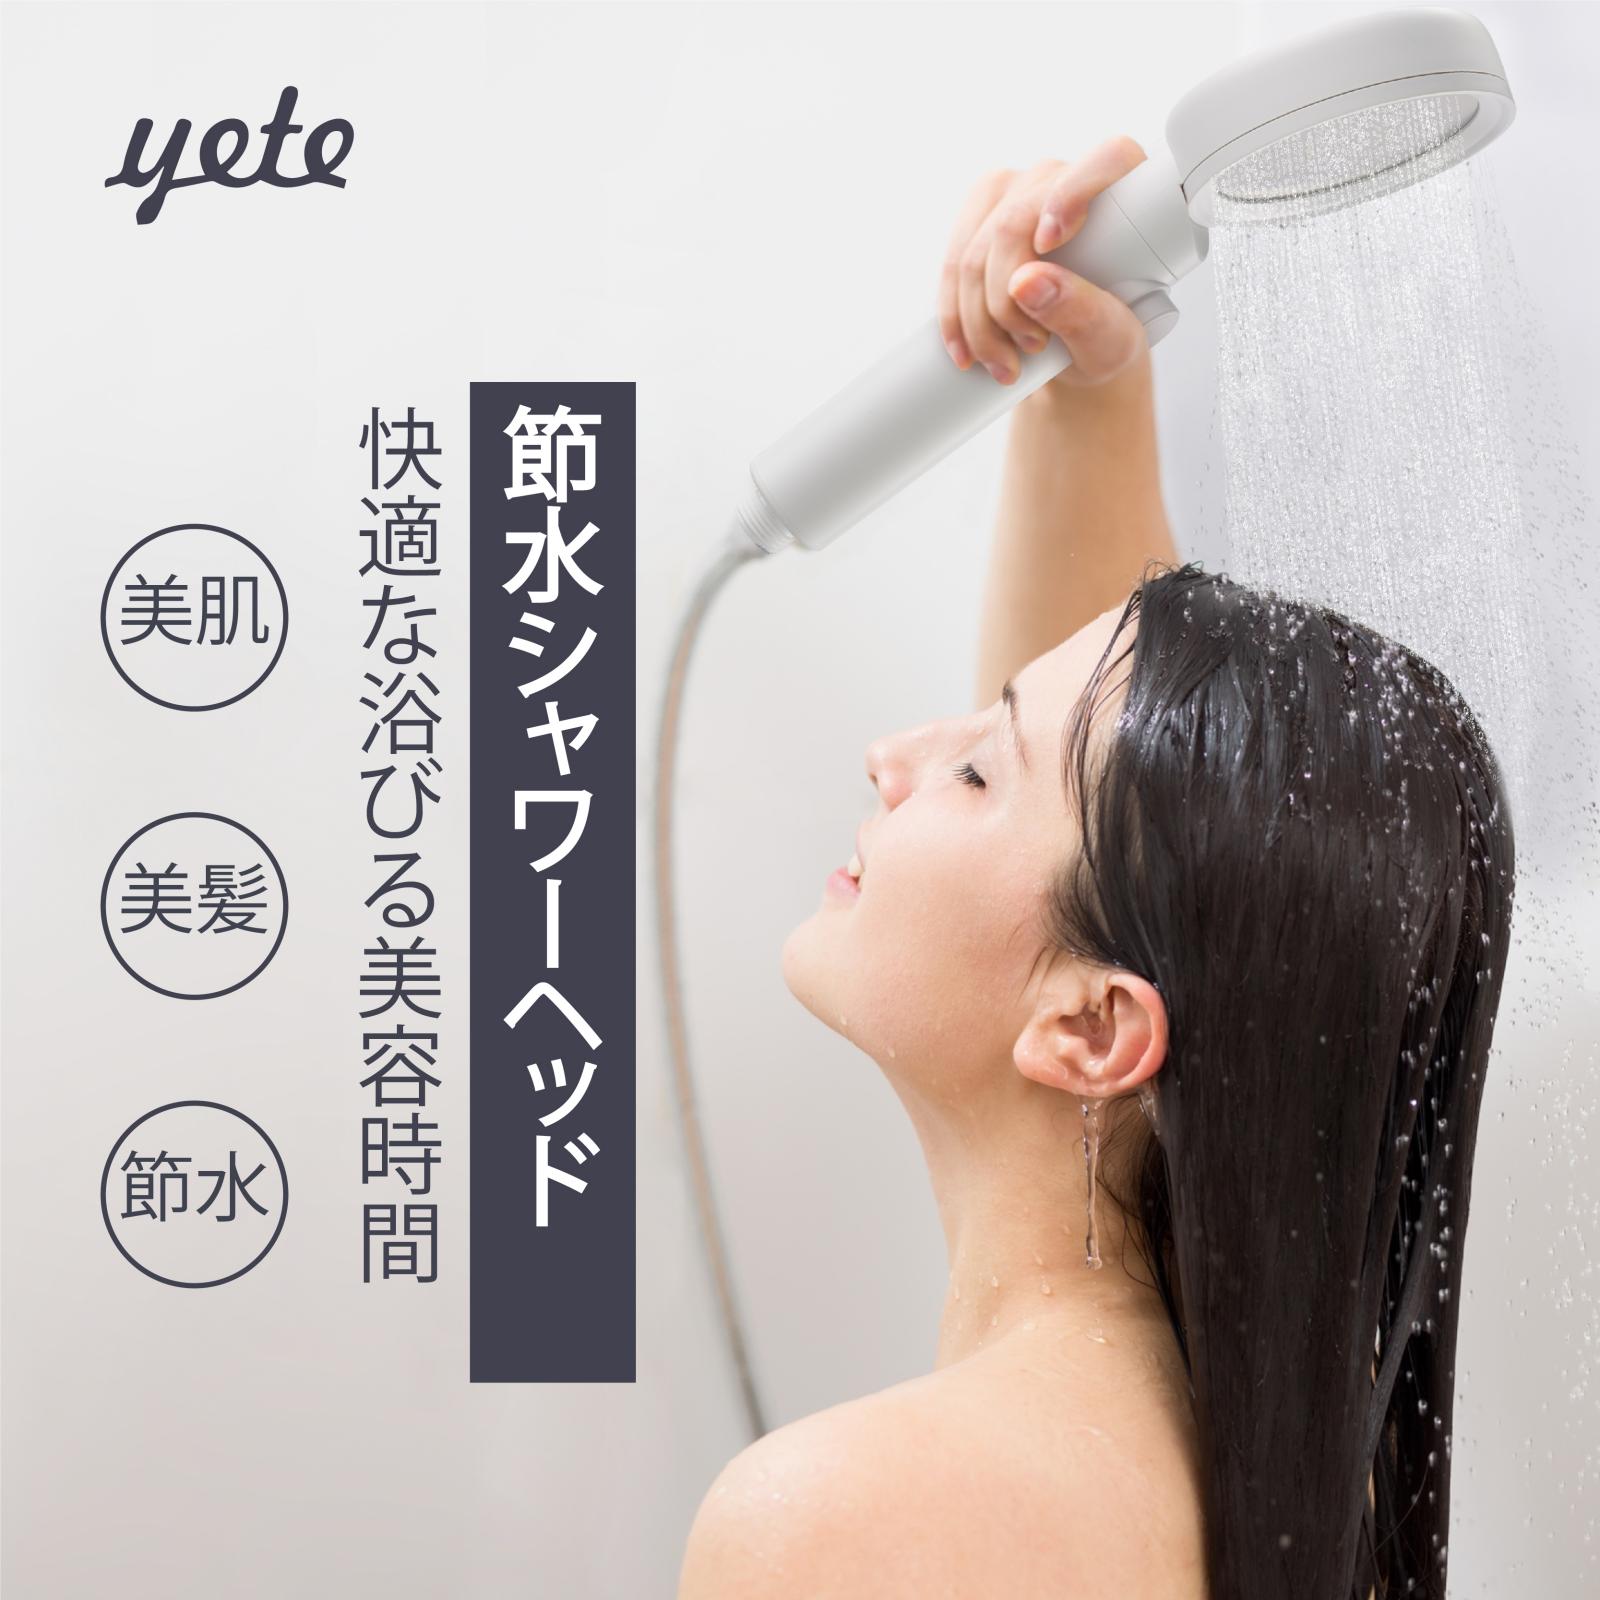 上品 シャワーヘッド 水質浄水機能 節水 美容 保温保湿 美髪 美肌